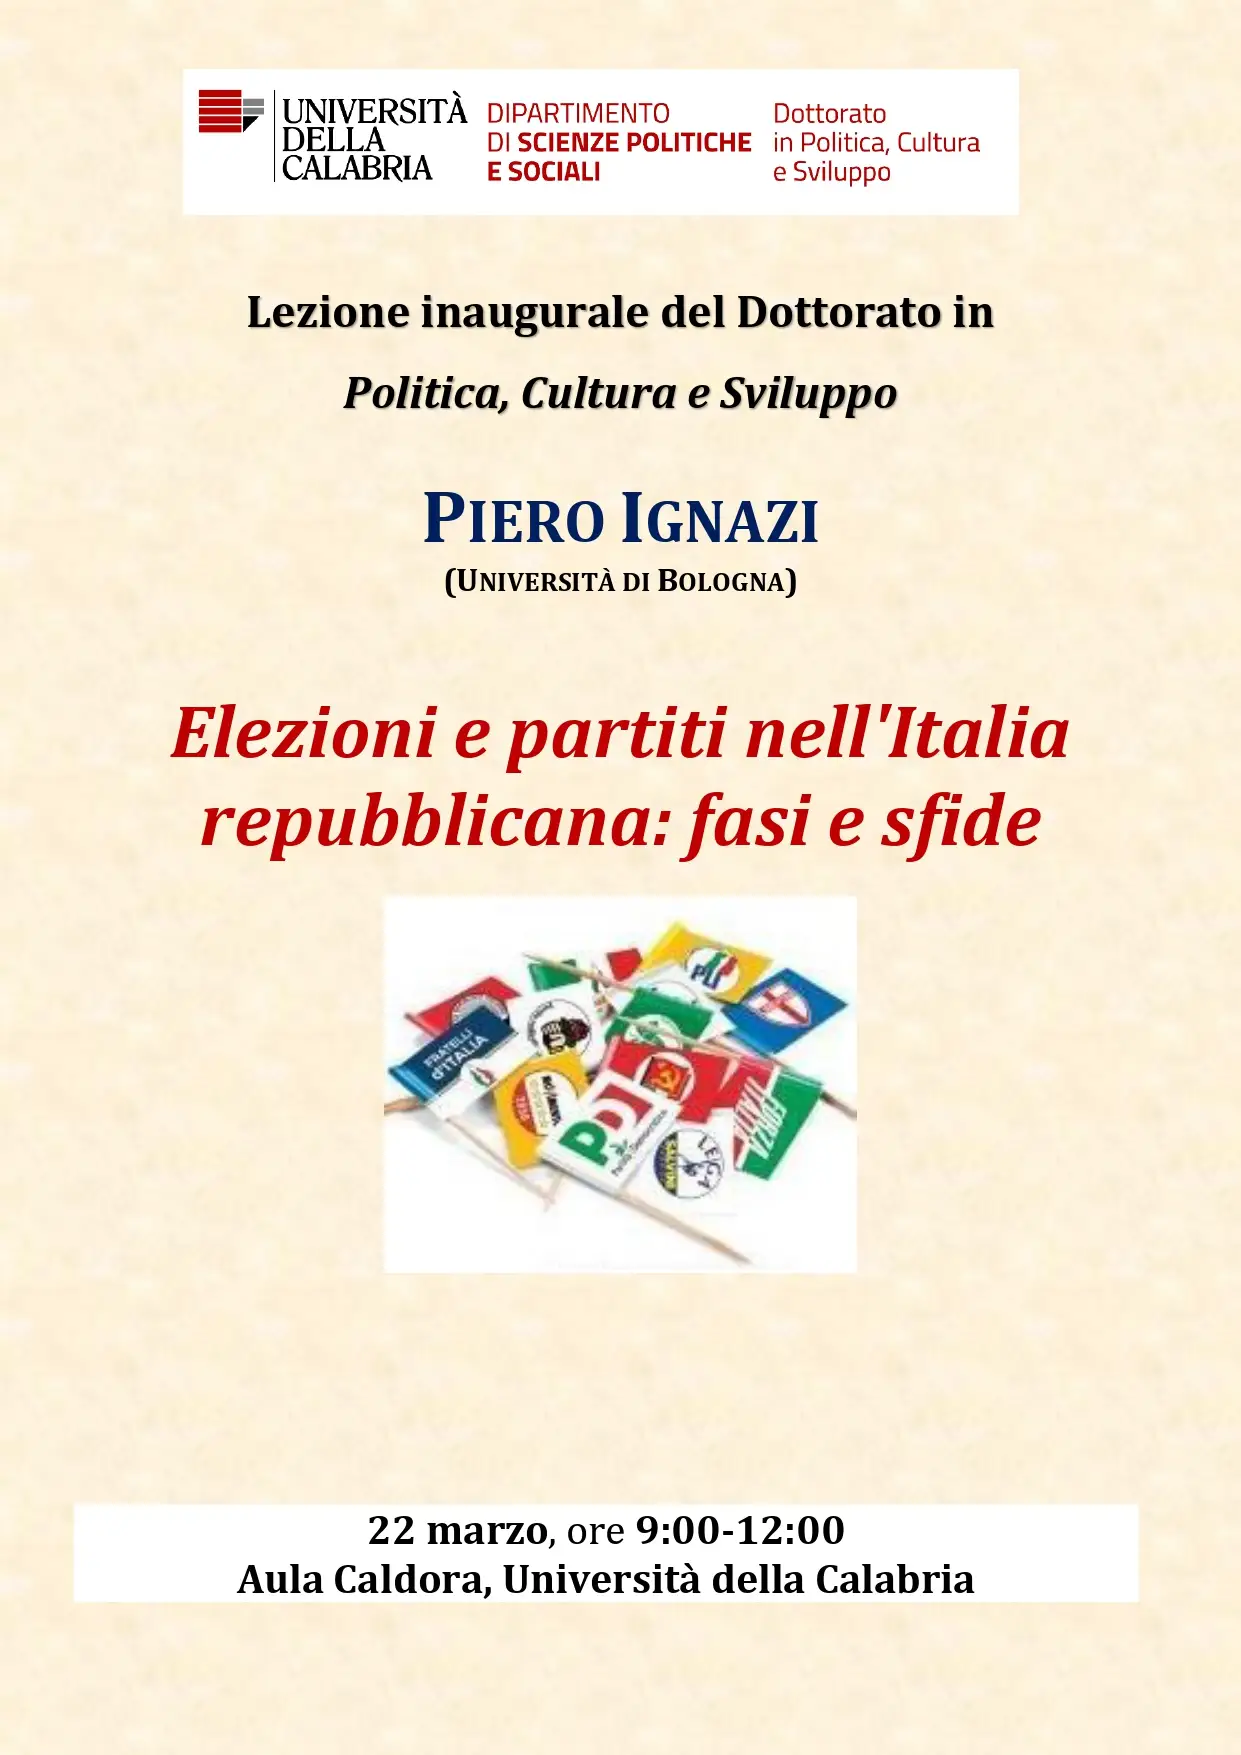 LEZIONE INAUGURALE DEL DOTTORATO "Elezioni e partiti nell'Italia repubblicana: fasi e sfide"